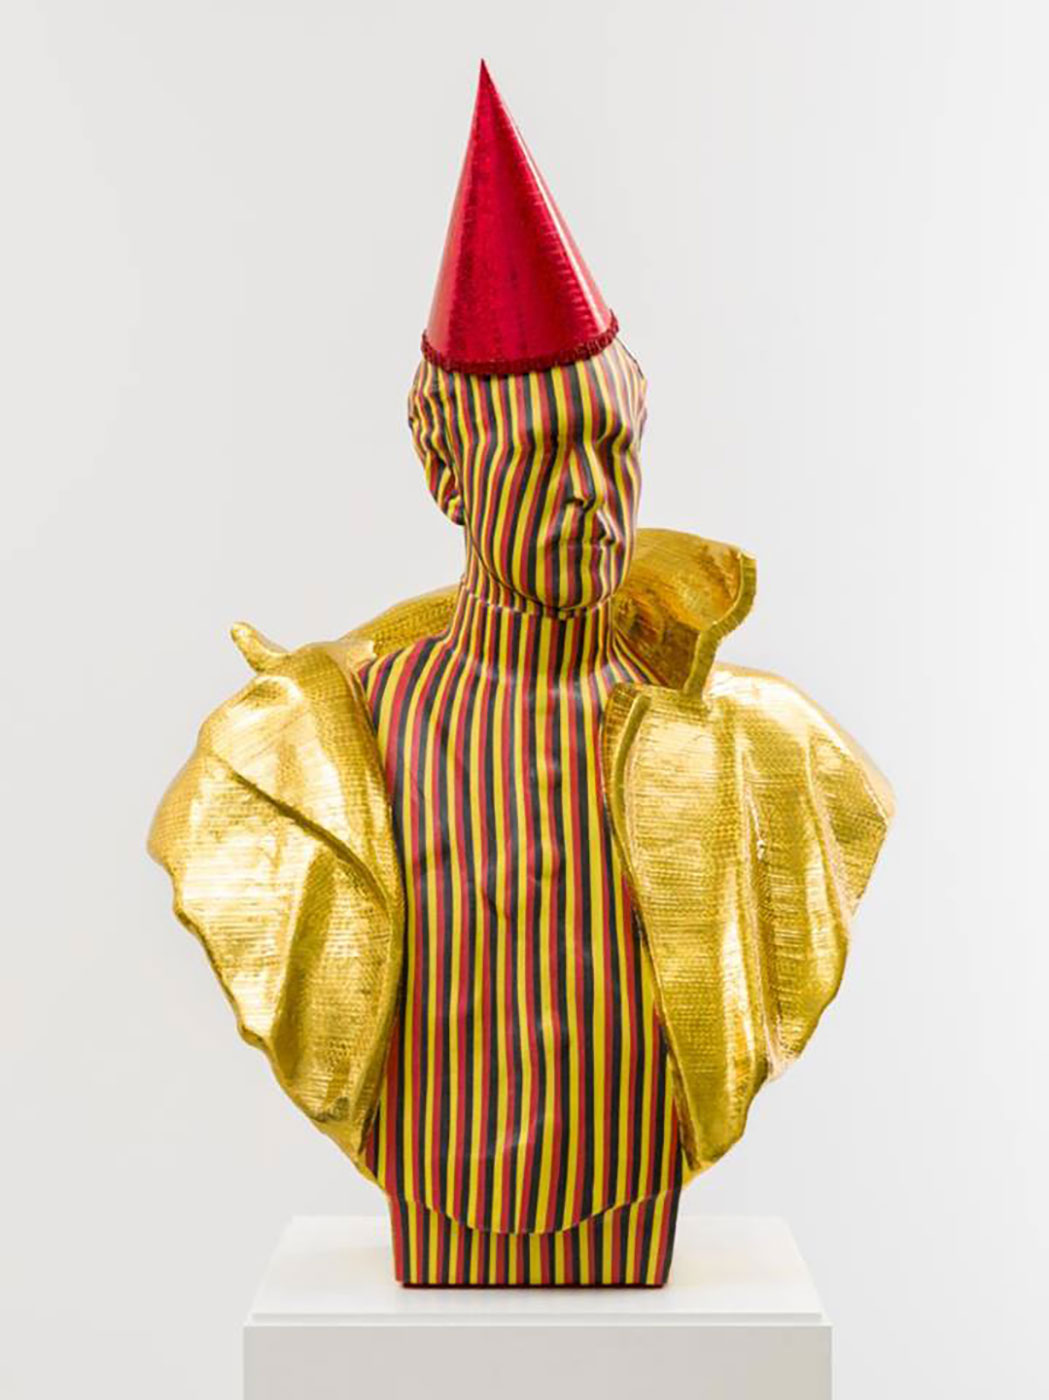 Jan Fabre: Zijne Majesteit de Koning, Leopold I Belgi�, 2016 - plaster, paper, pigment, polymeer, fabric - 102 x 68 x 40cm - � Angelos bvba